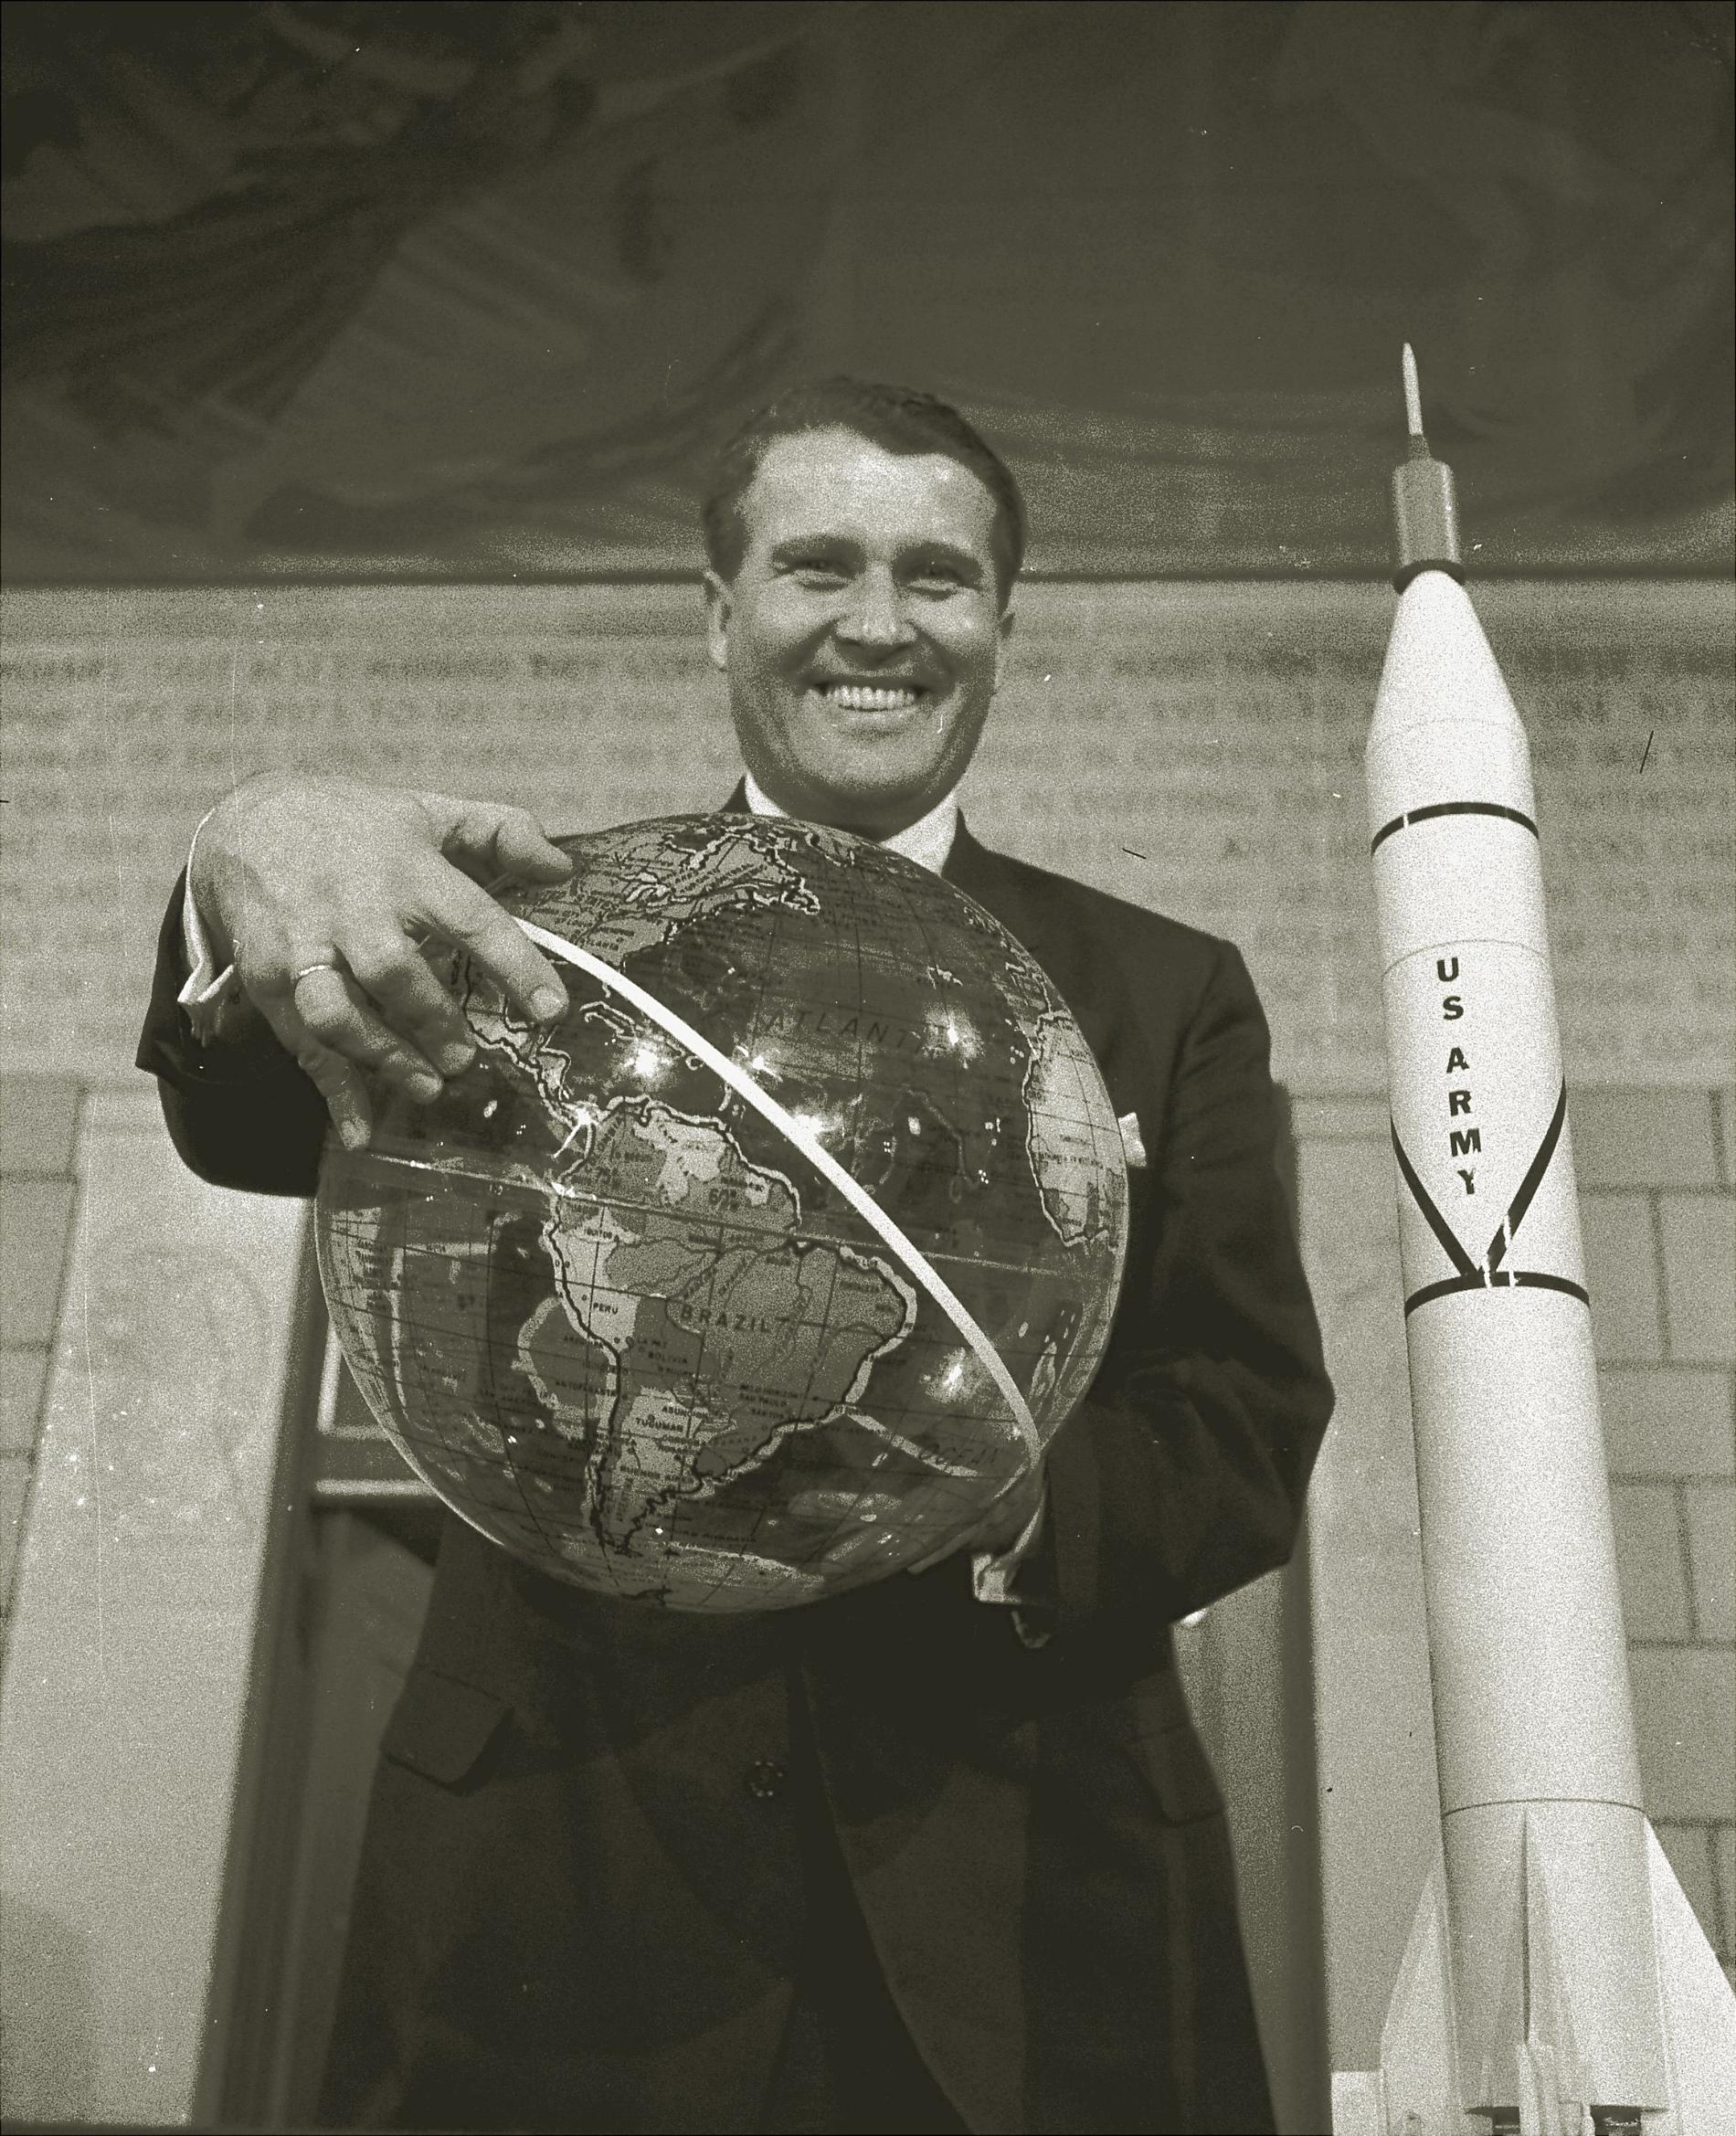 Den tidigare nazisten Wernher von Braun var den som låg bakom den stora hjälpraketen, Saturn V, som gjorde det möjligt för rymdfarkosten Apollo 11 att nå månen.